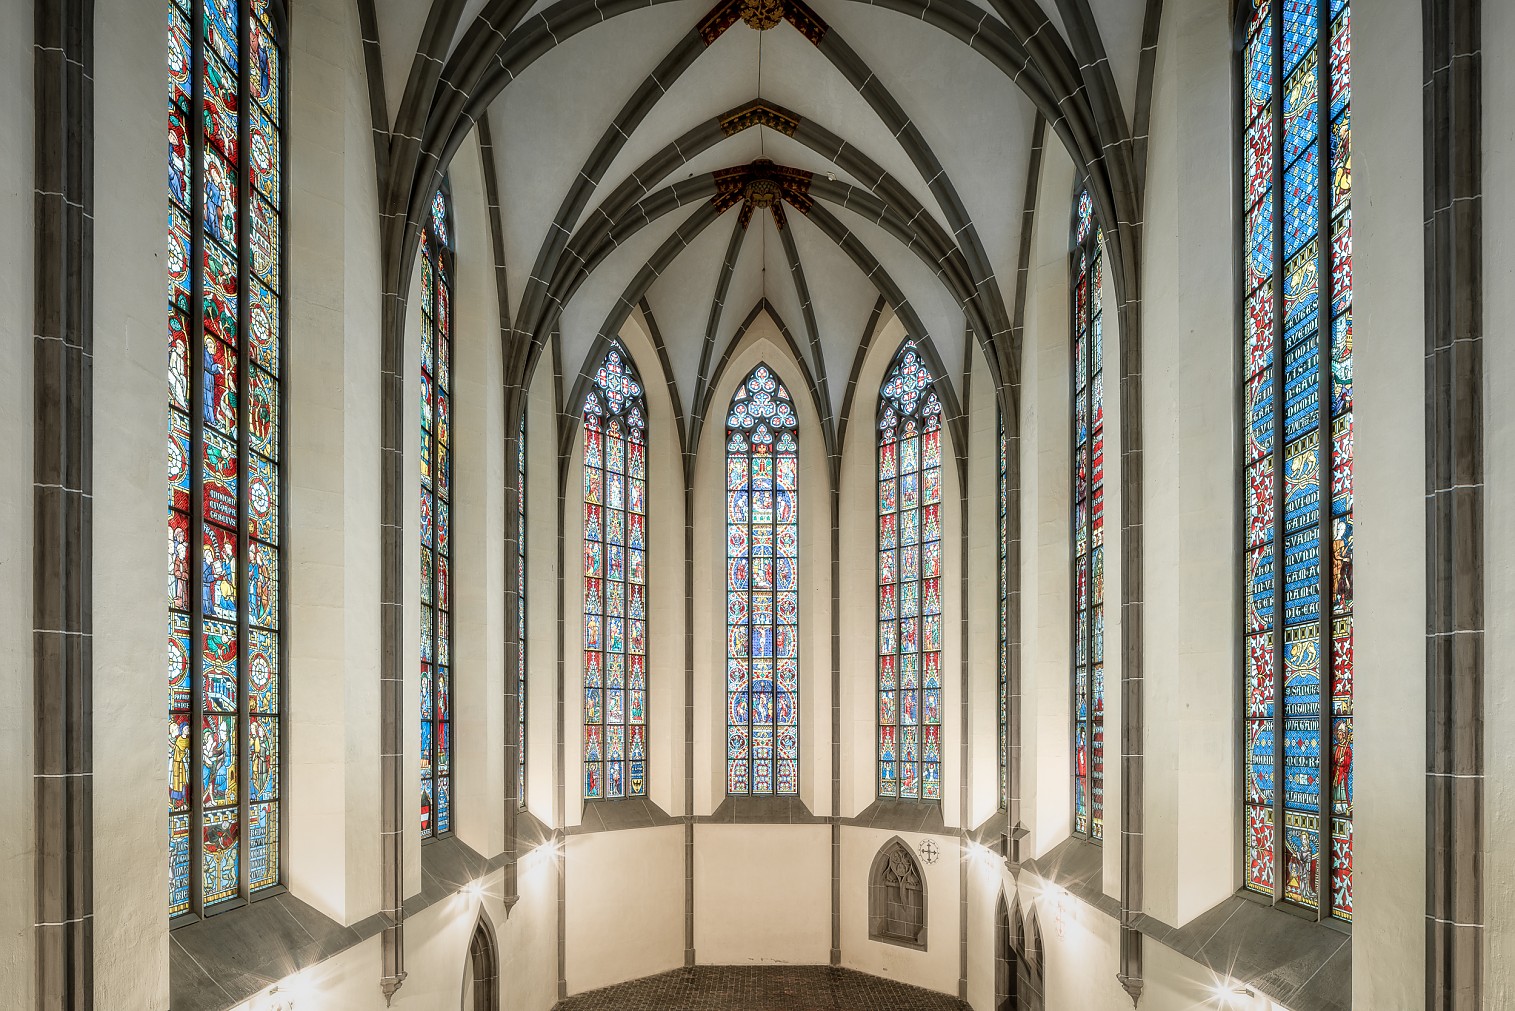 glasfenster-kloster-koenigsfelden-03-copyright-peter-fischer.jpg